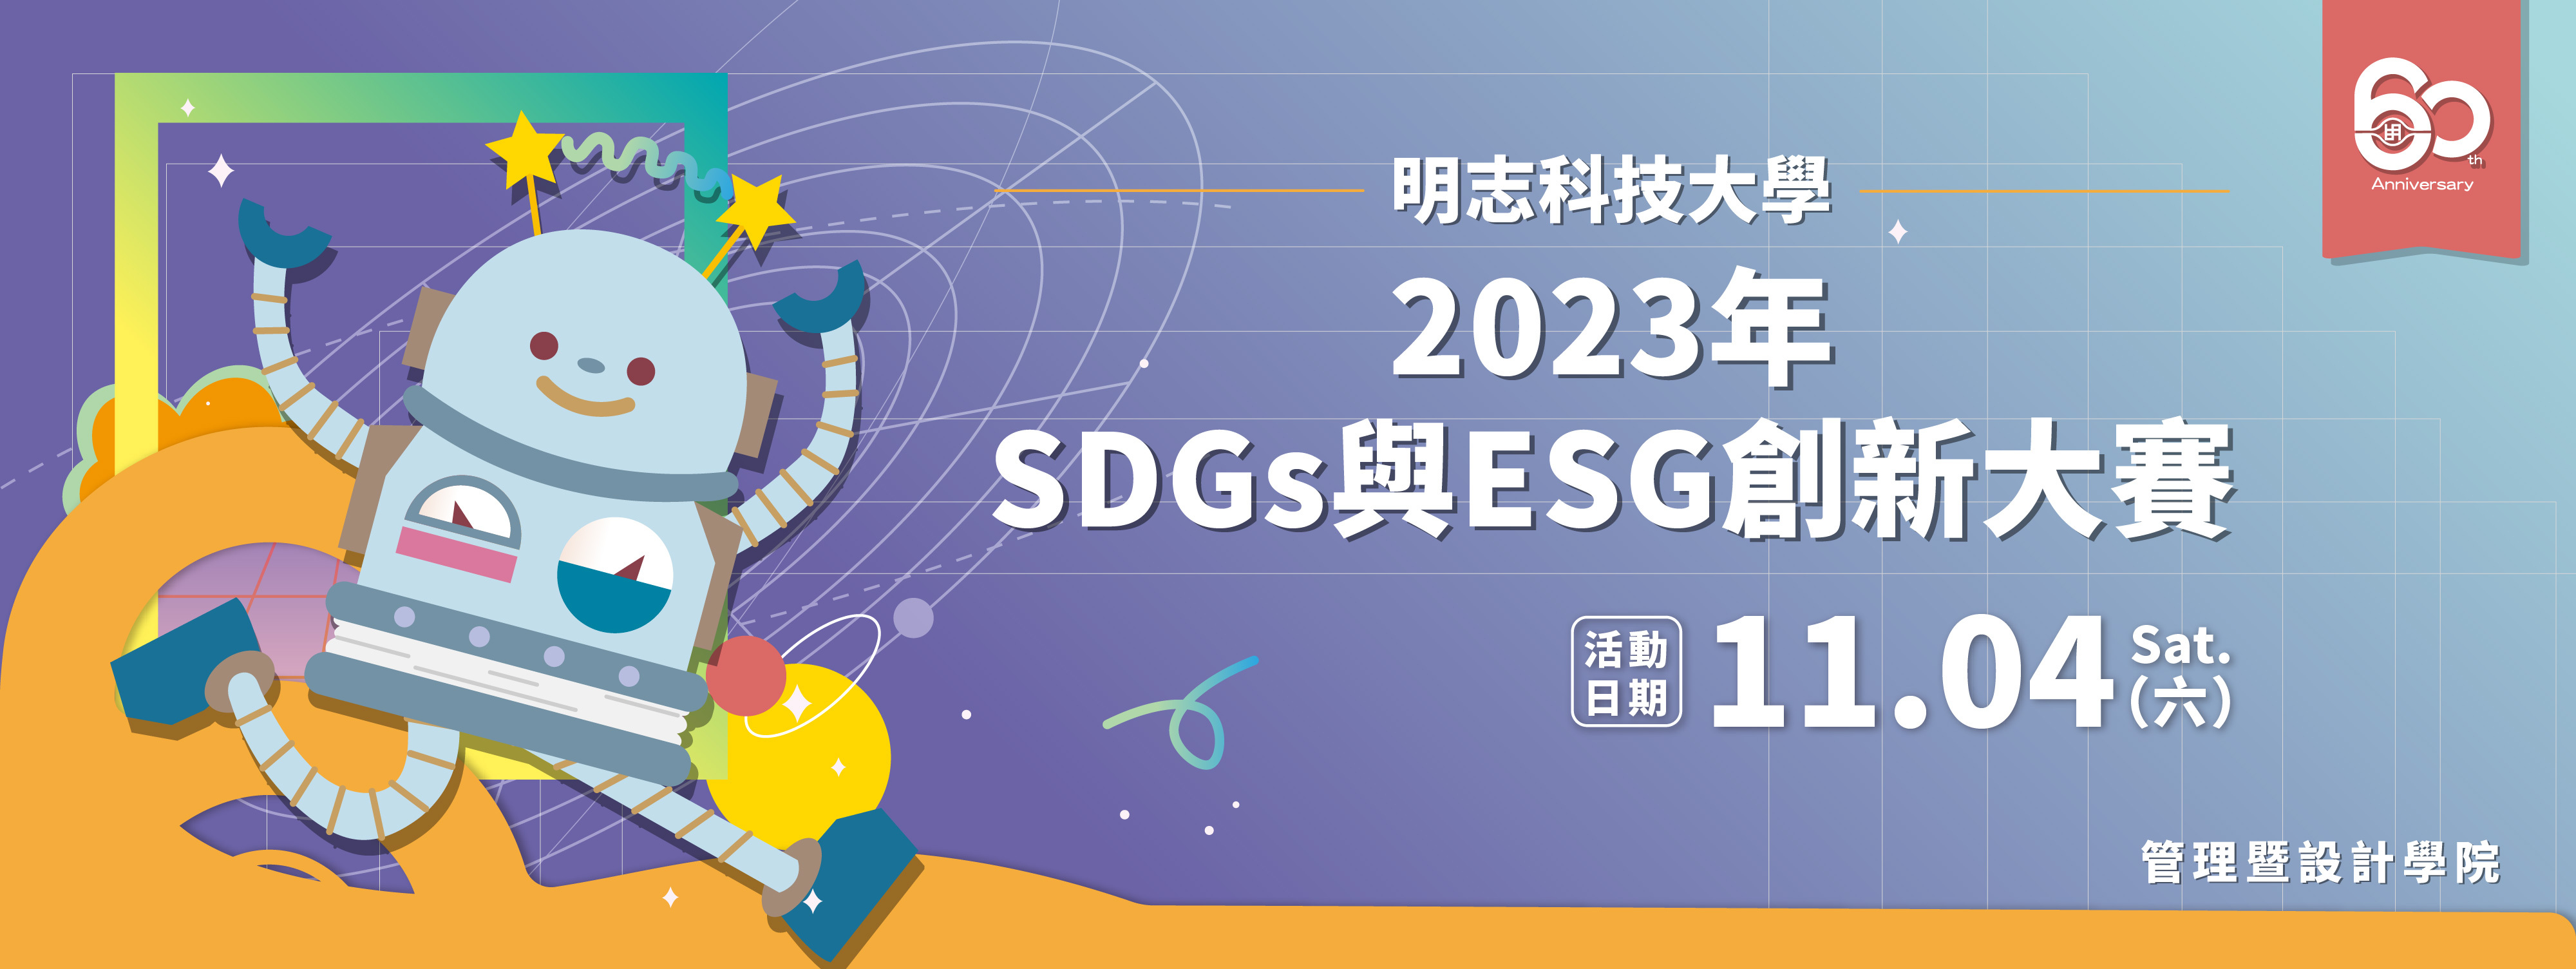 明志科技大學 60 週年「2023 年 SDGs 與 ESG 創新大賽」競賽，本校提案申請報名延長至 112 年 10 月 29 日 23:59 止!